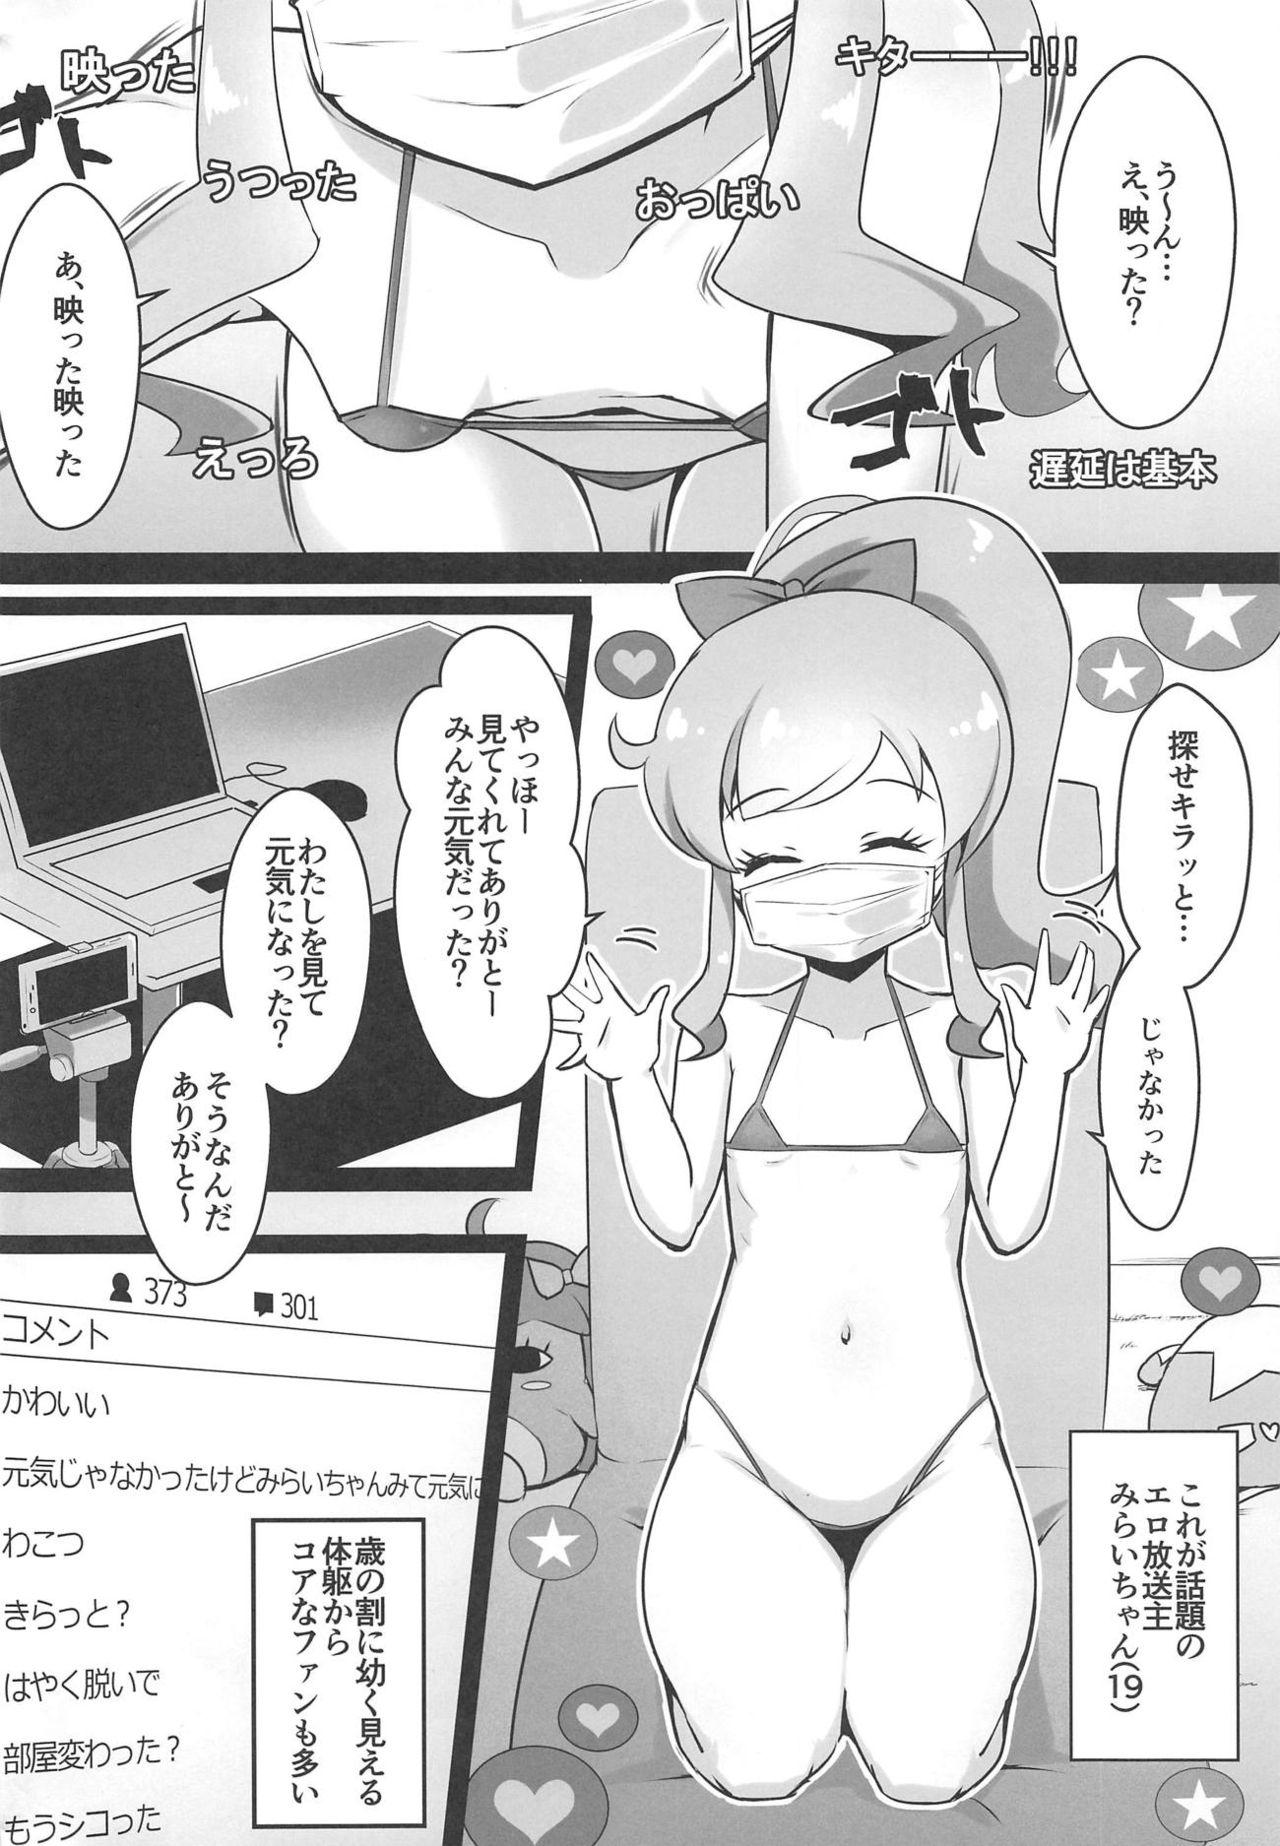 Fingering Ura Momo Channel - Onanie Haishin de Ii ne Atsumete Mita - Kiratto pri chan Licking - Page 3